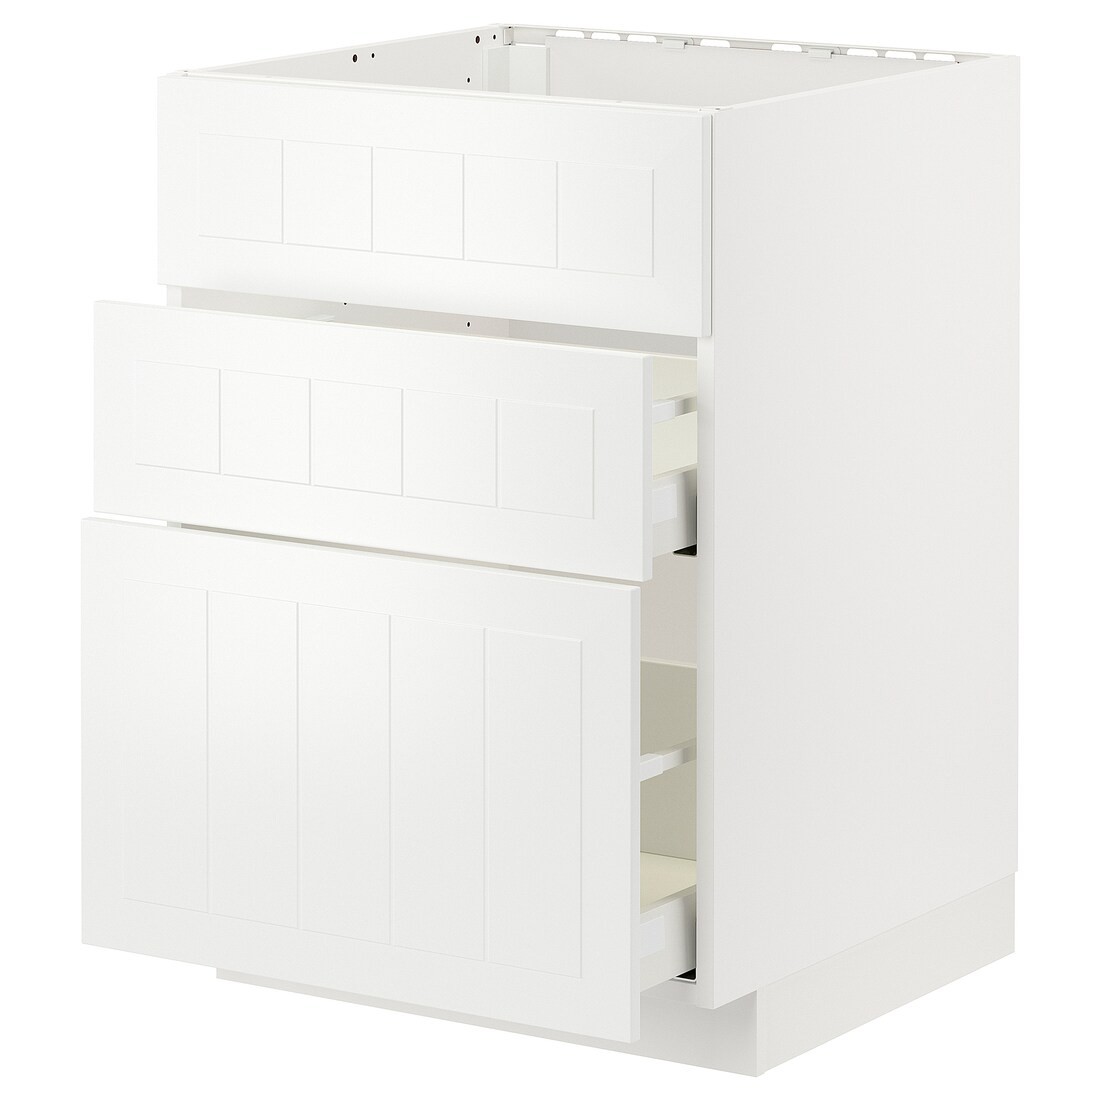 IKEA METOD МЕТОД / MAXIMERA МАКСИМЕРА Напольный шкаф для варочной панели / вытяжка с ящиком, белый / Stensund белый, 60x60 см 89477560 894.775.60